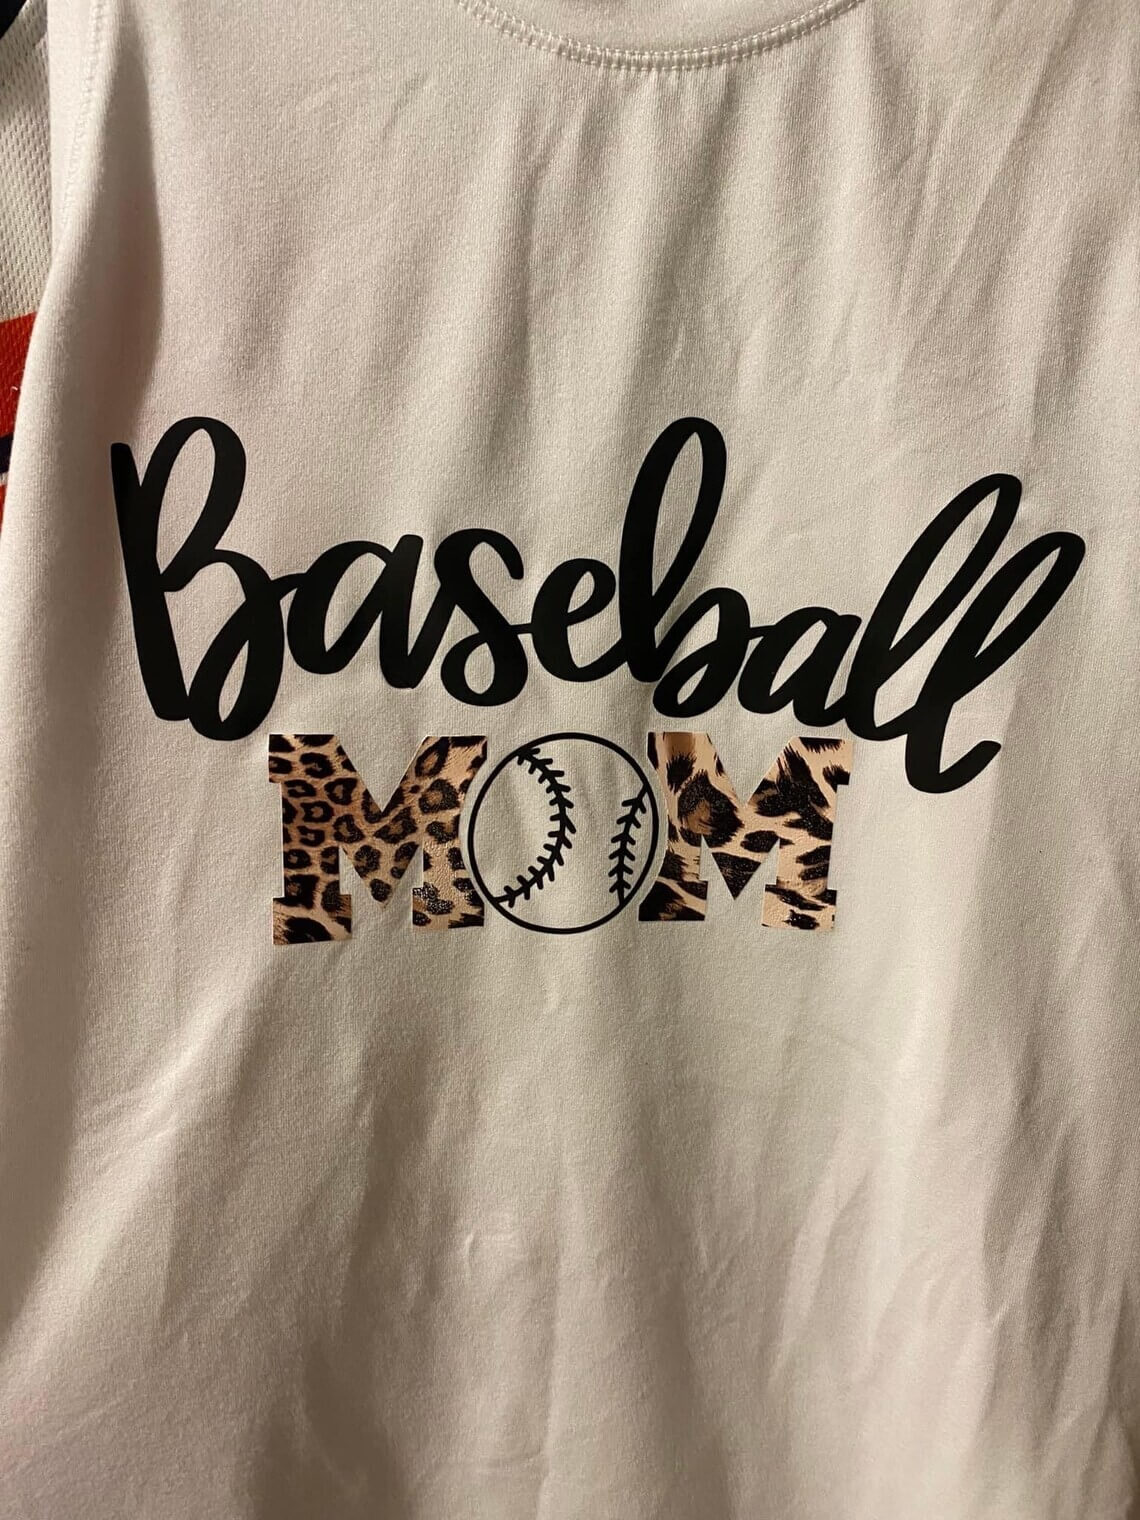 Inscription Baseball Mom on the beige t-shirt.